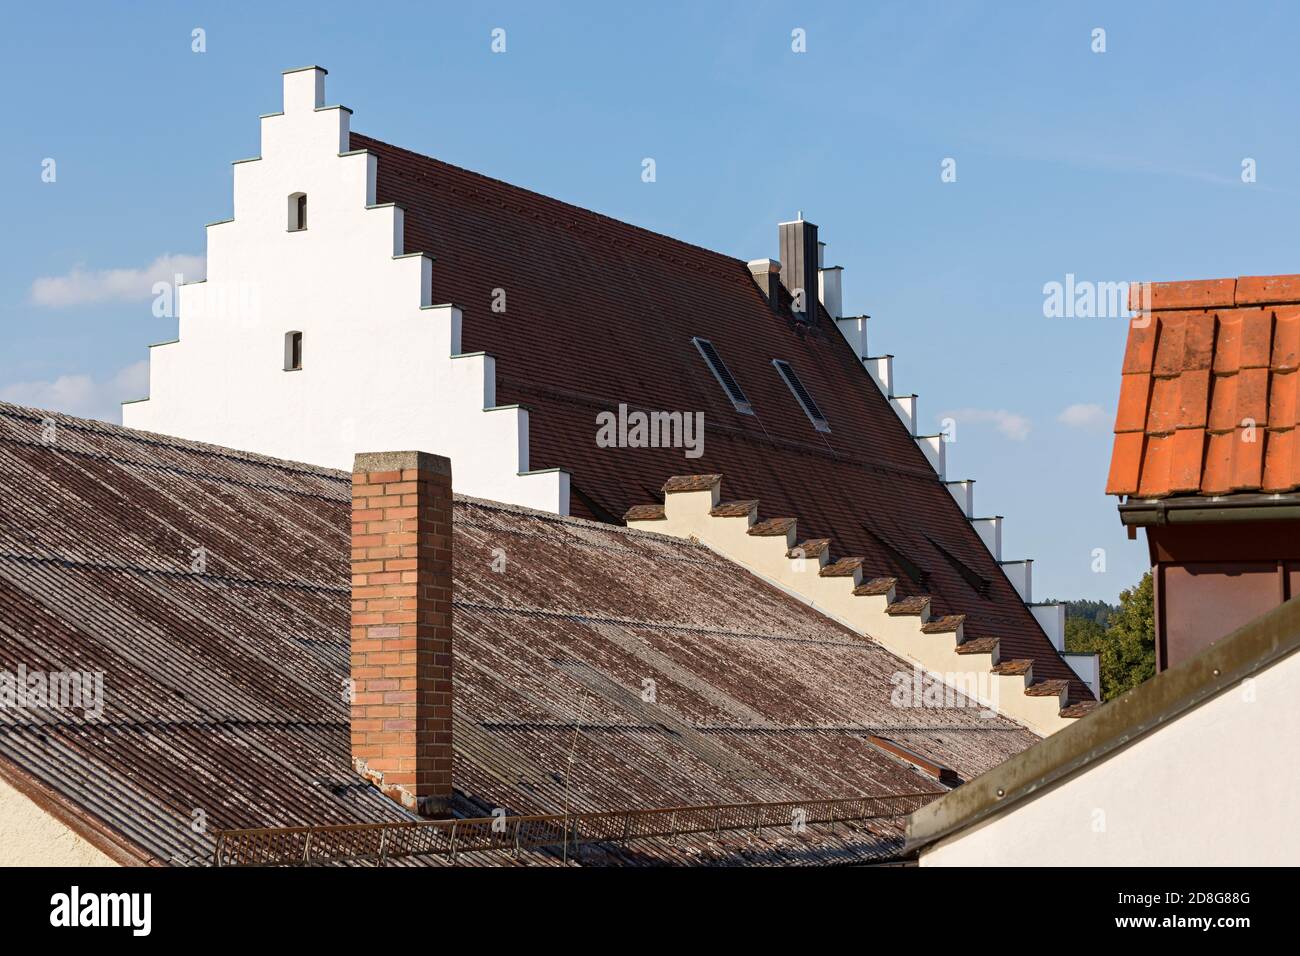 Beilngries, Altstadt, Dächer, Treppengiebel Stock Photo